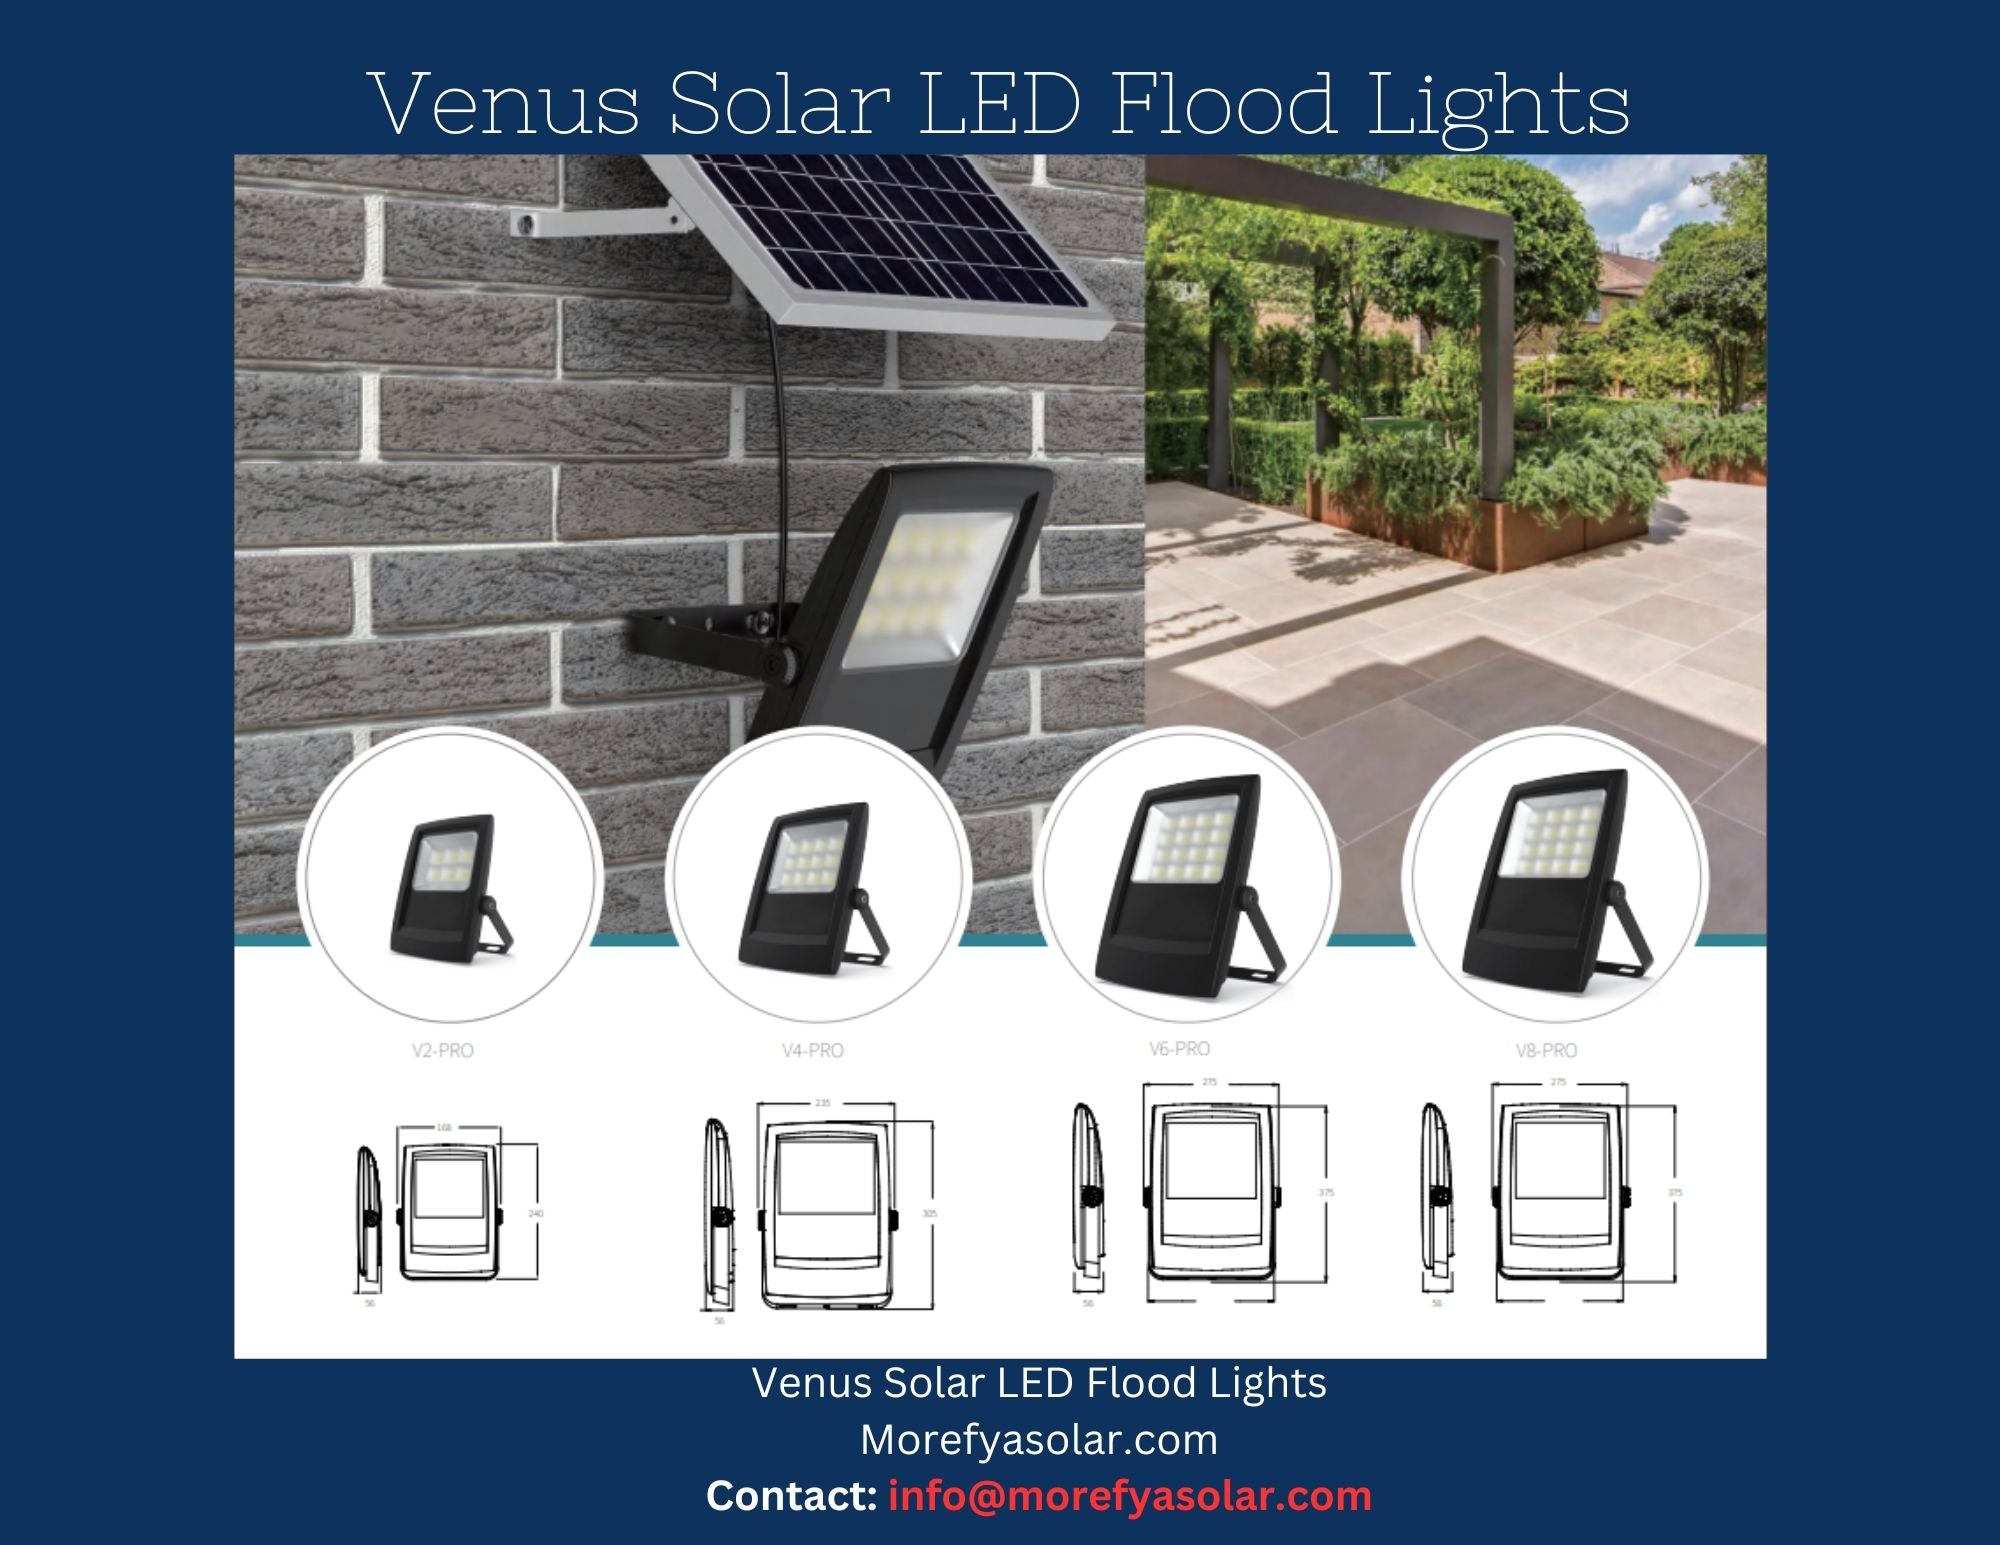 Venus V8 Pro Solar LED Flood Light